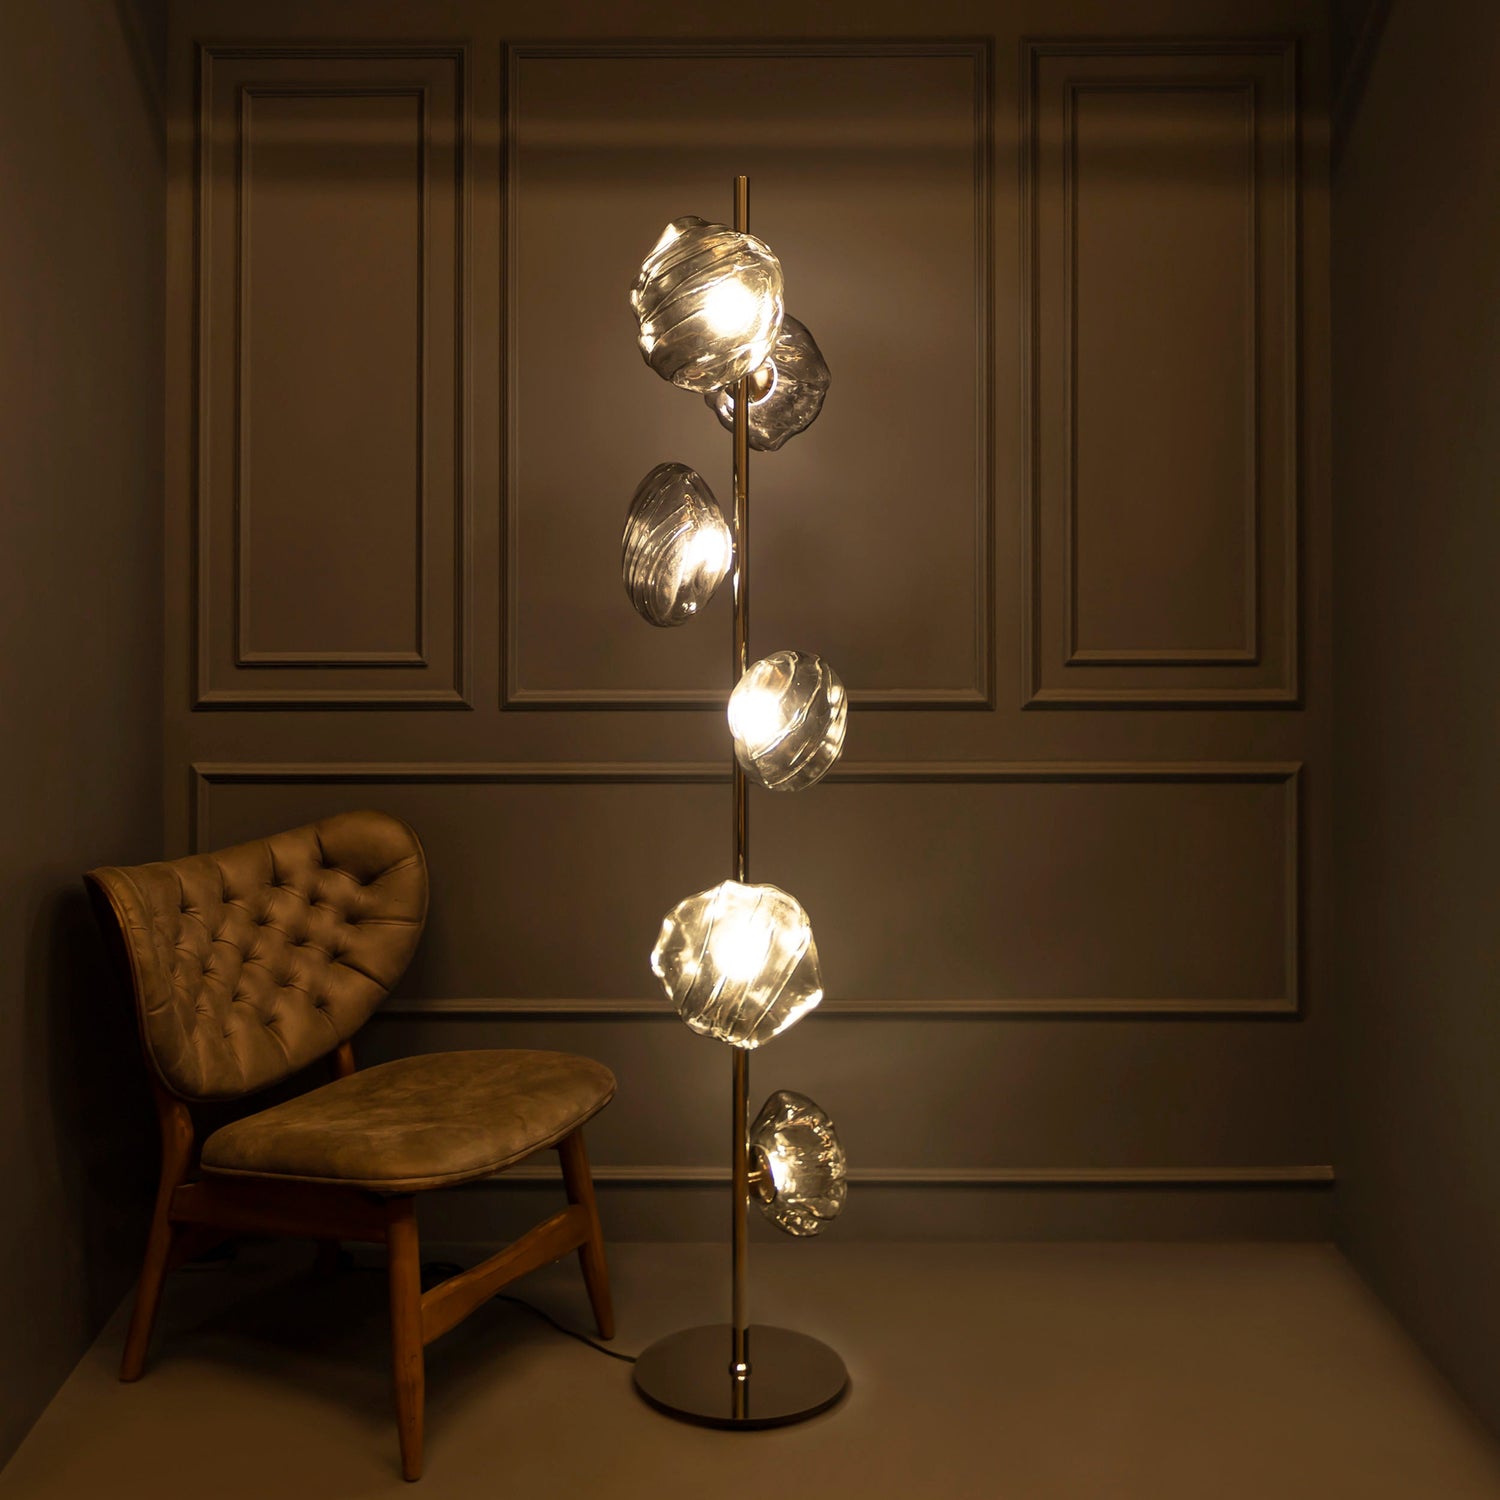 Smoky & Amber Glass Floor Lamp, Chrome or Brass Floor Lighting, Modern Home Decor Art Deco LED Light, Housewarming gift Lamp MODEL : HOBART